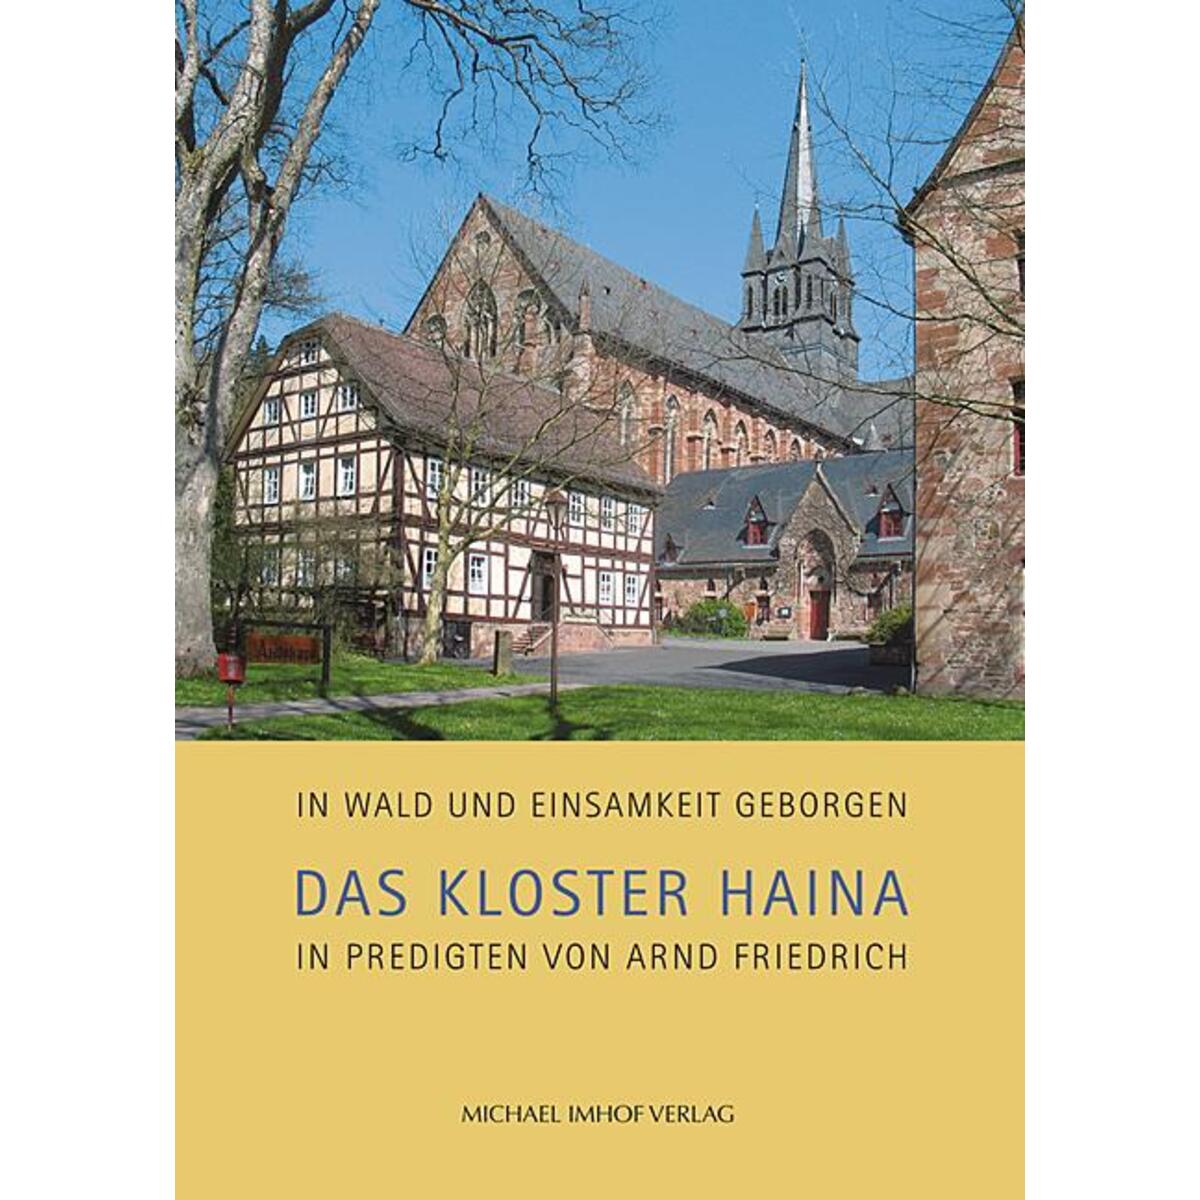 Das Kloster Haina in Predigten von Arnd Friedrich von Imhof Verlag